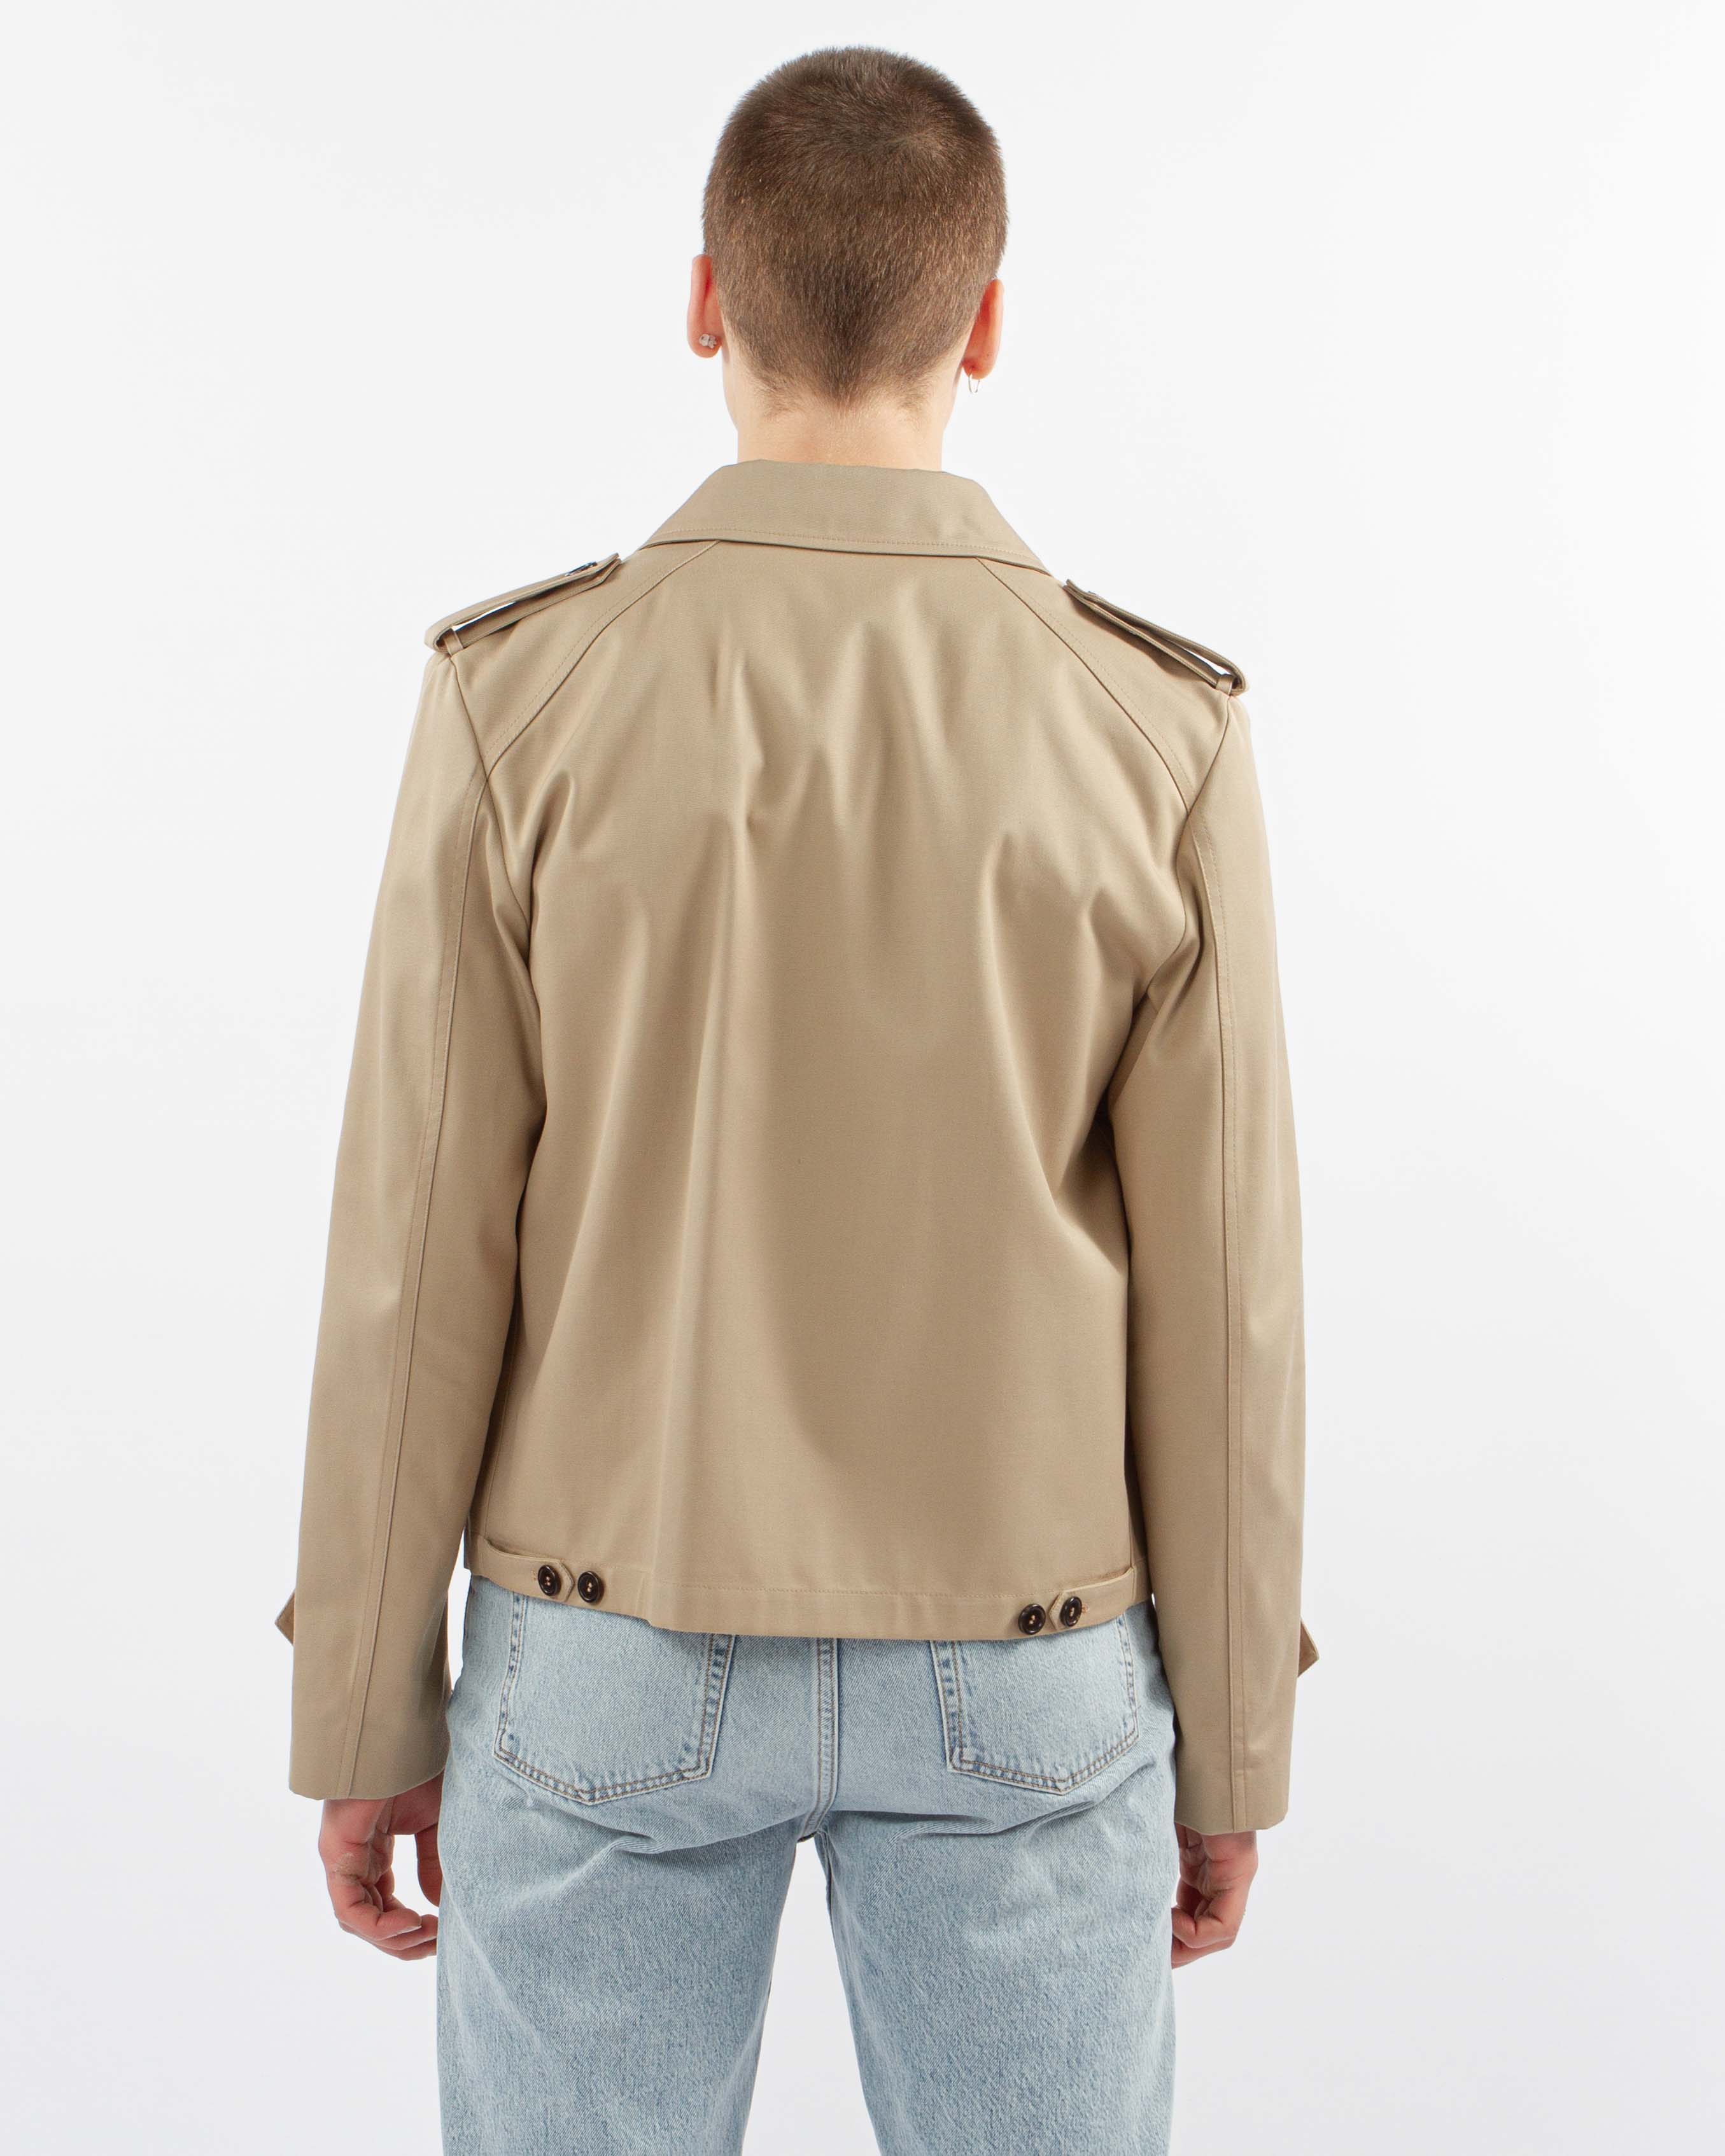 Jacket by Saint Laurent